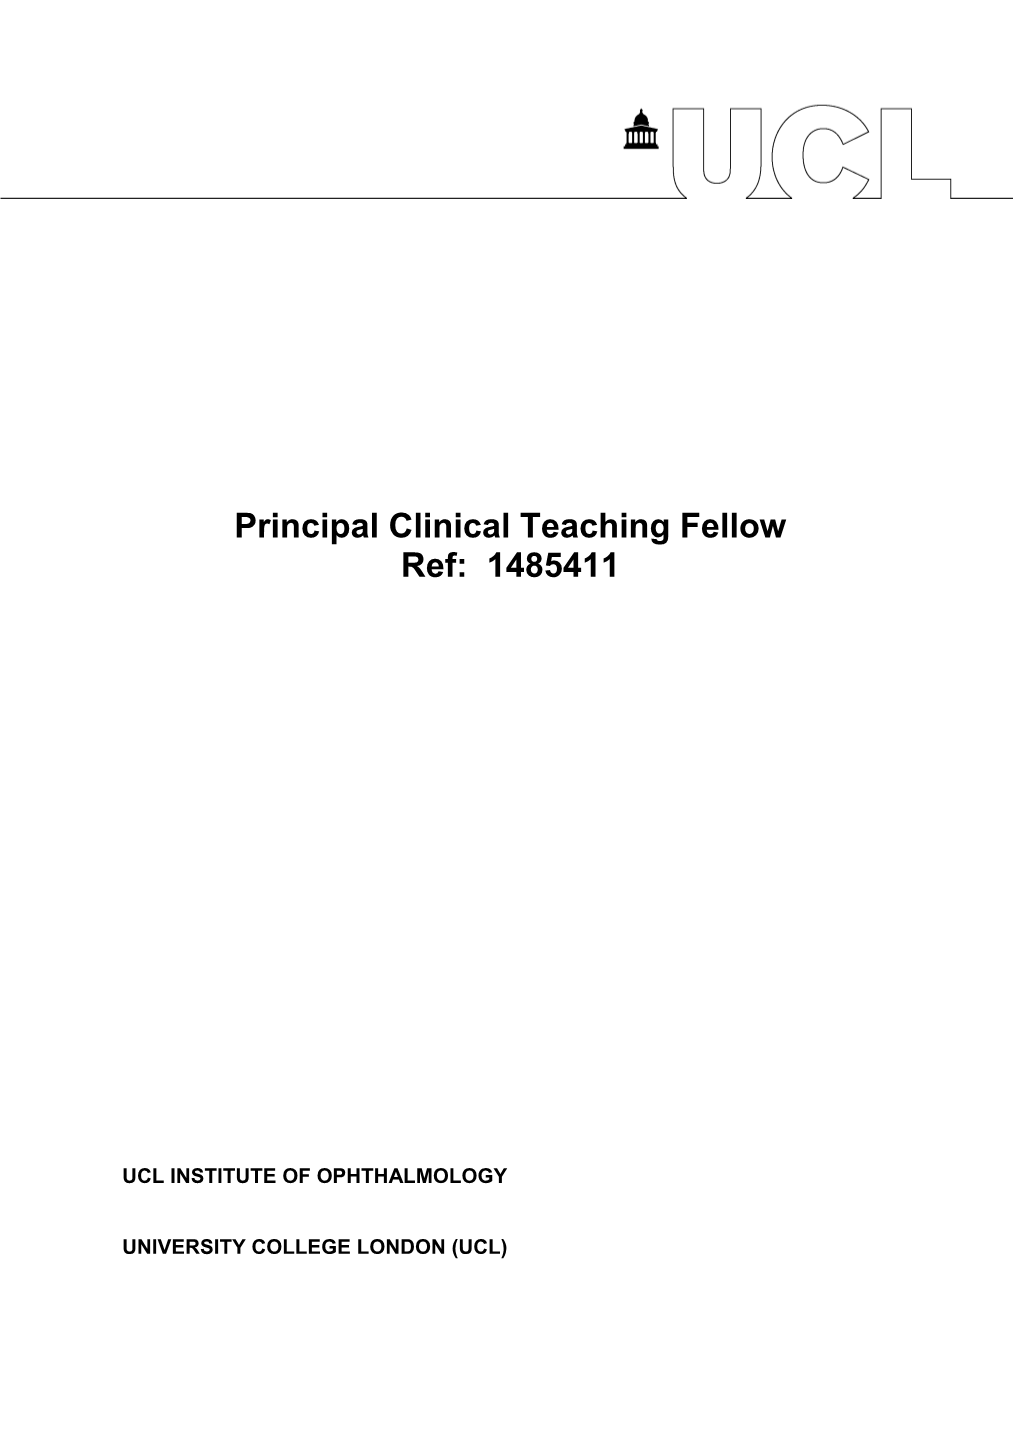 Principal Clinical Teaching Fellow Ref: 1485411